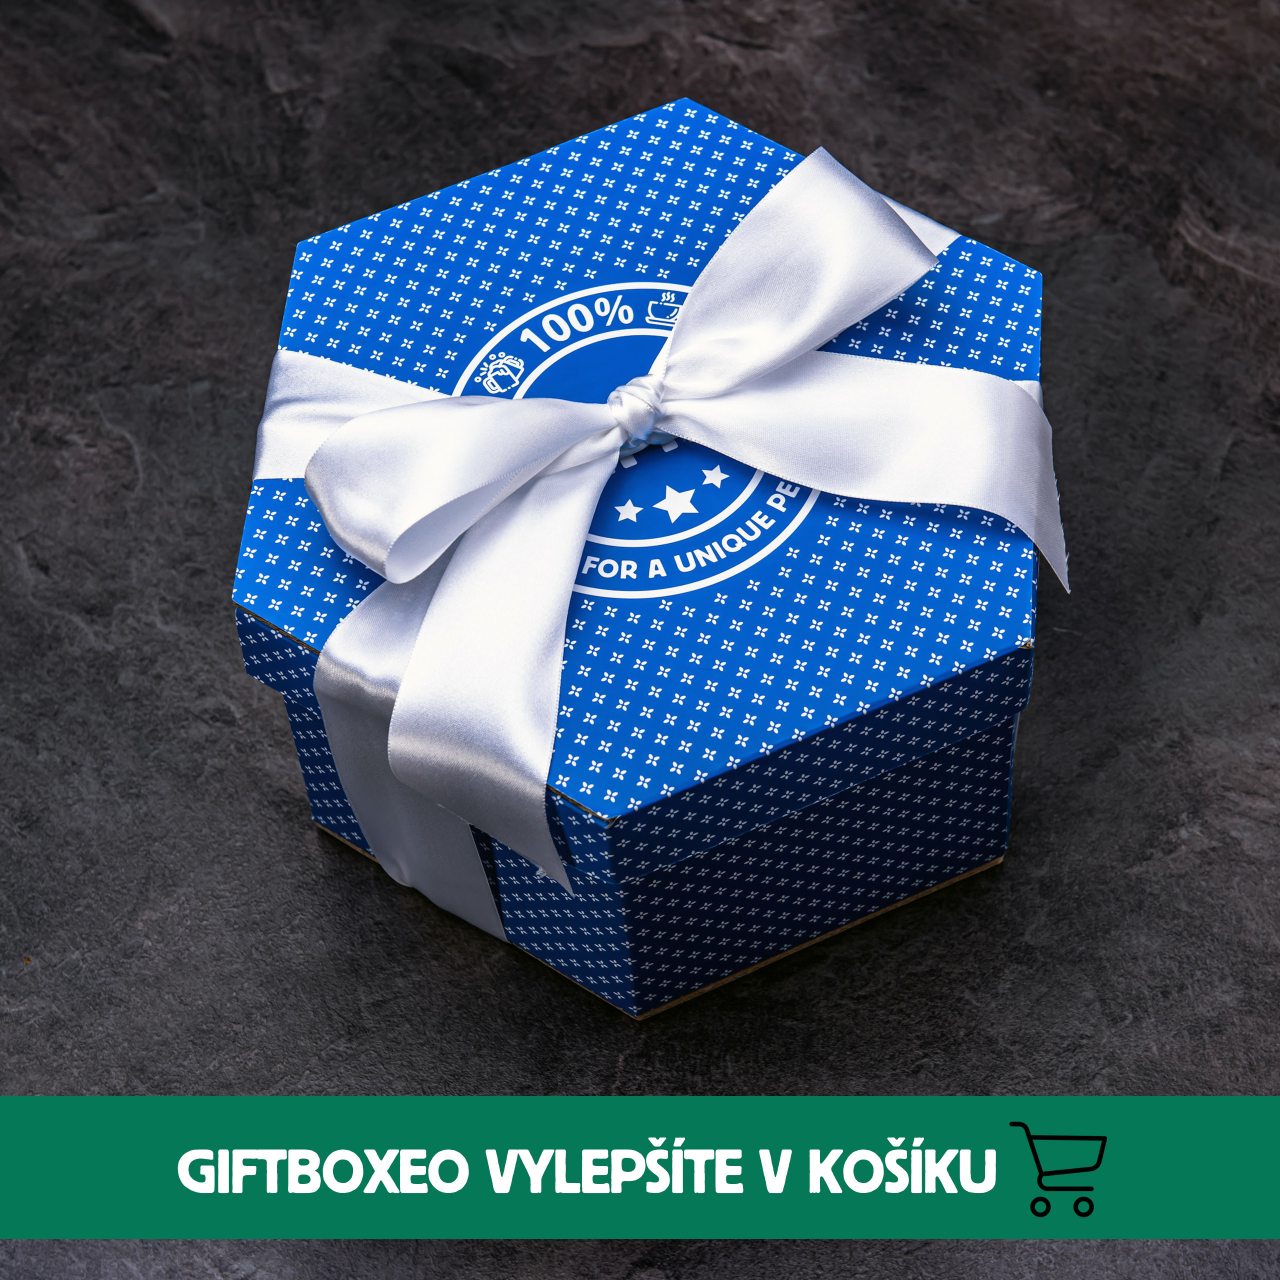 Giftboxeo plné chilli specialit - Modré XXL Nová verze